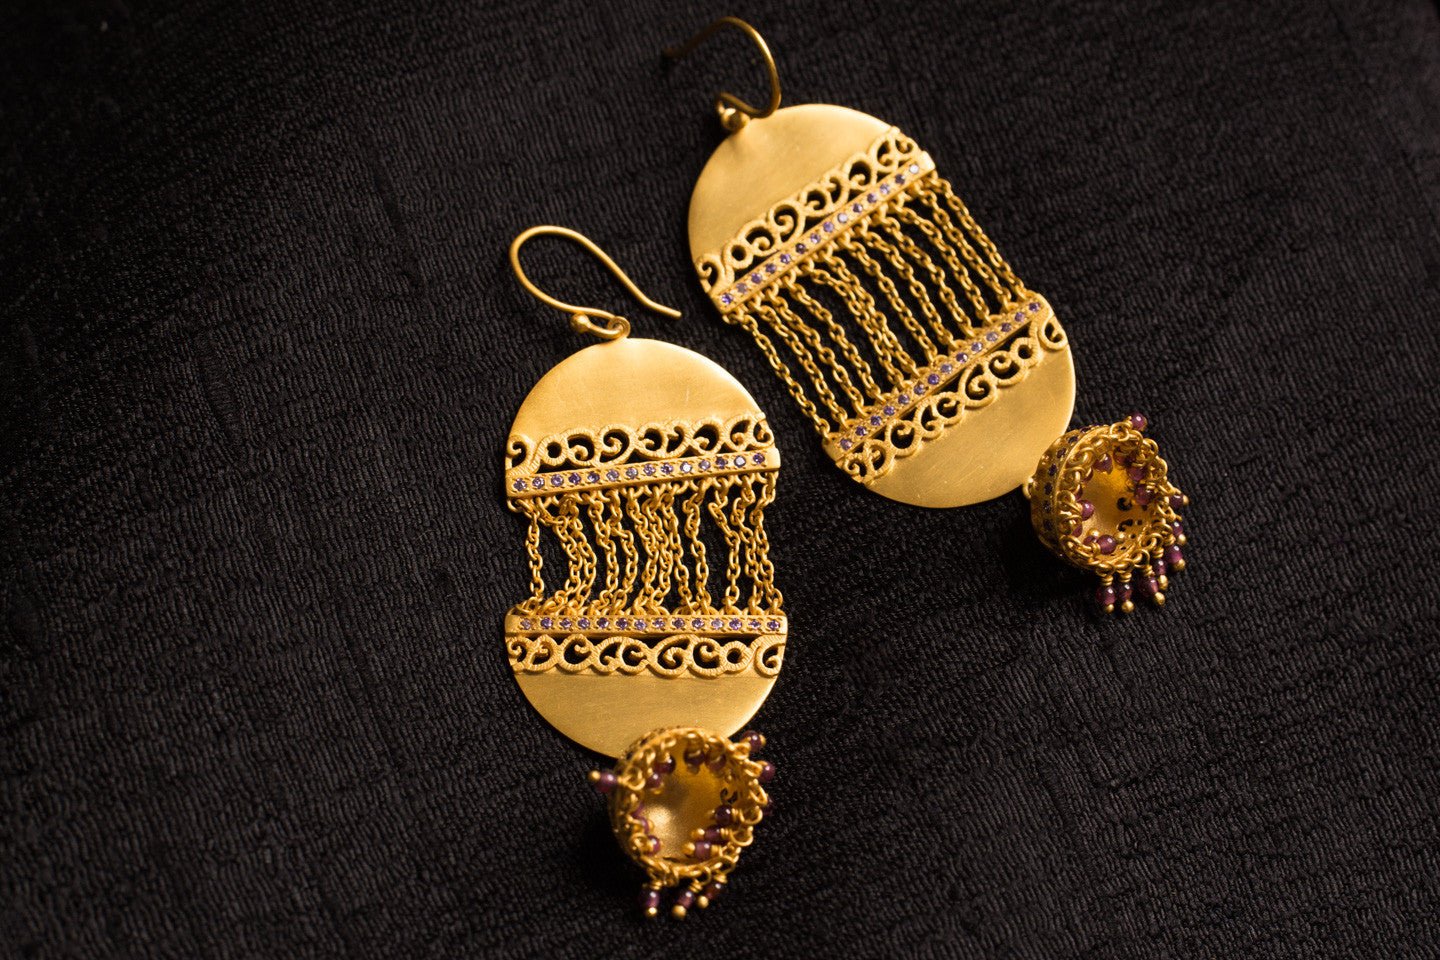 20a434-silver-gold-plated-amrapali-earrings-amethyst-zircon-jhumka-cut-work